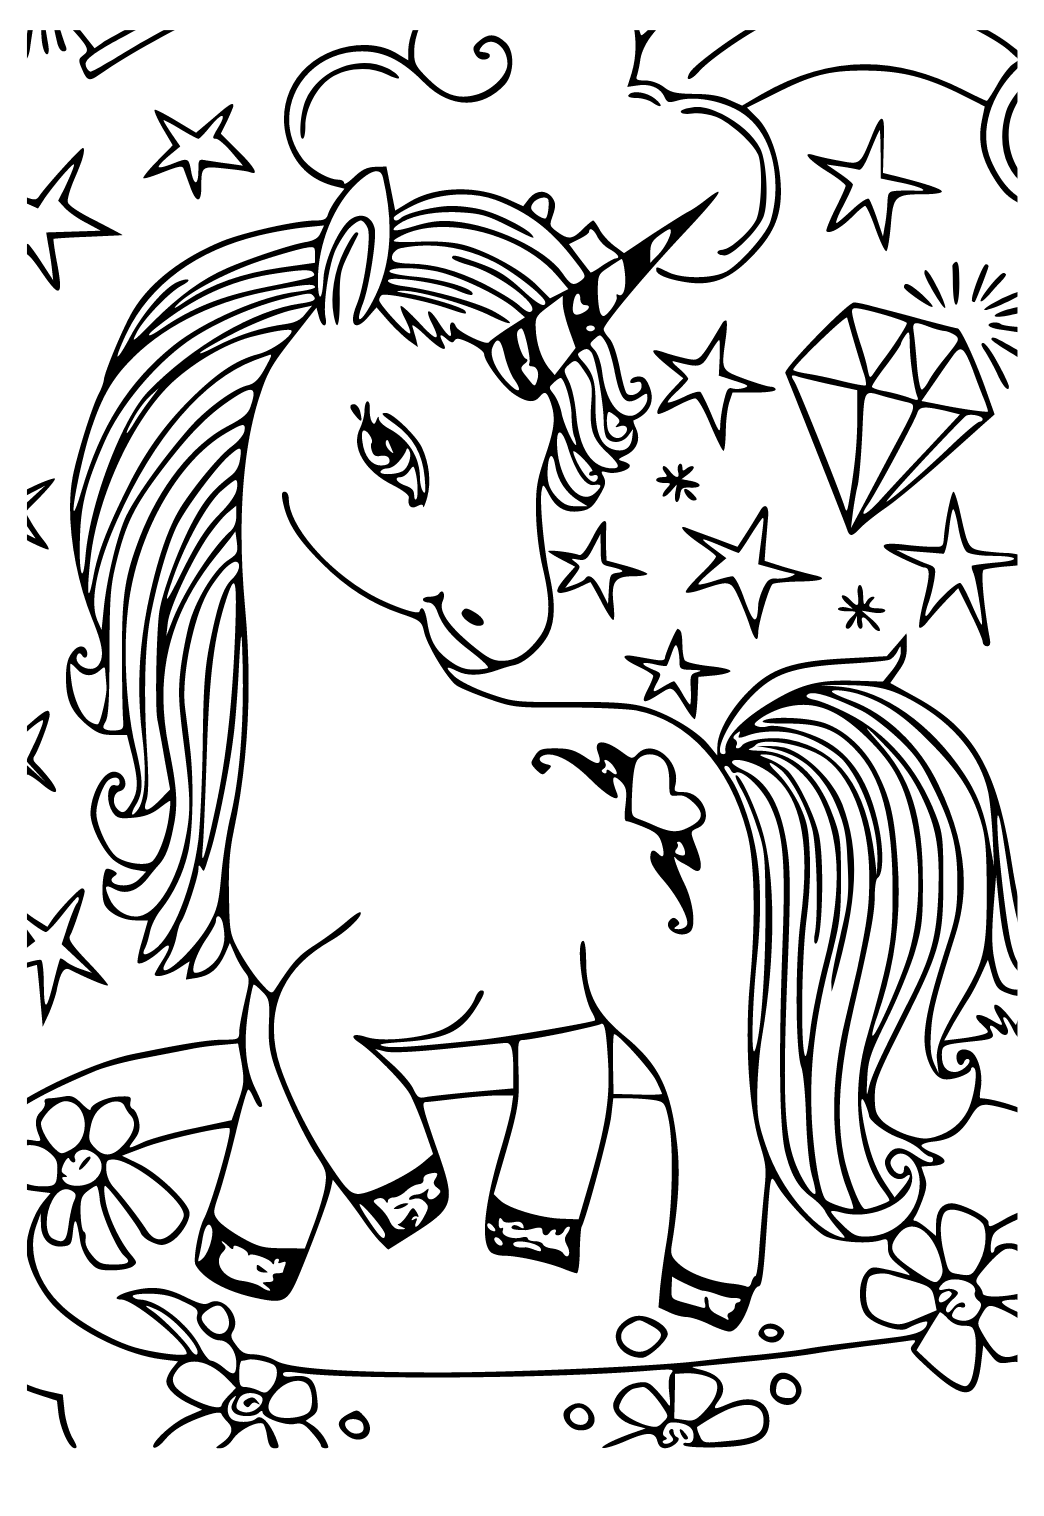 Disegno e Immagino Pop It Unicorno da Colorare e Stampare Gratis per Adulti  e Bambini 